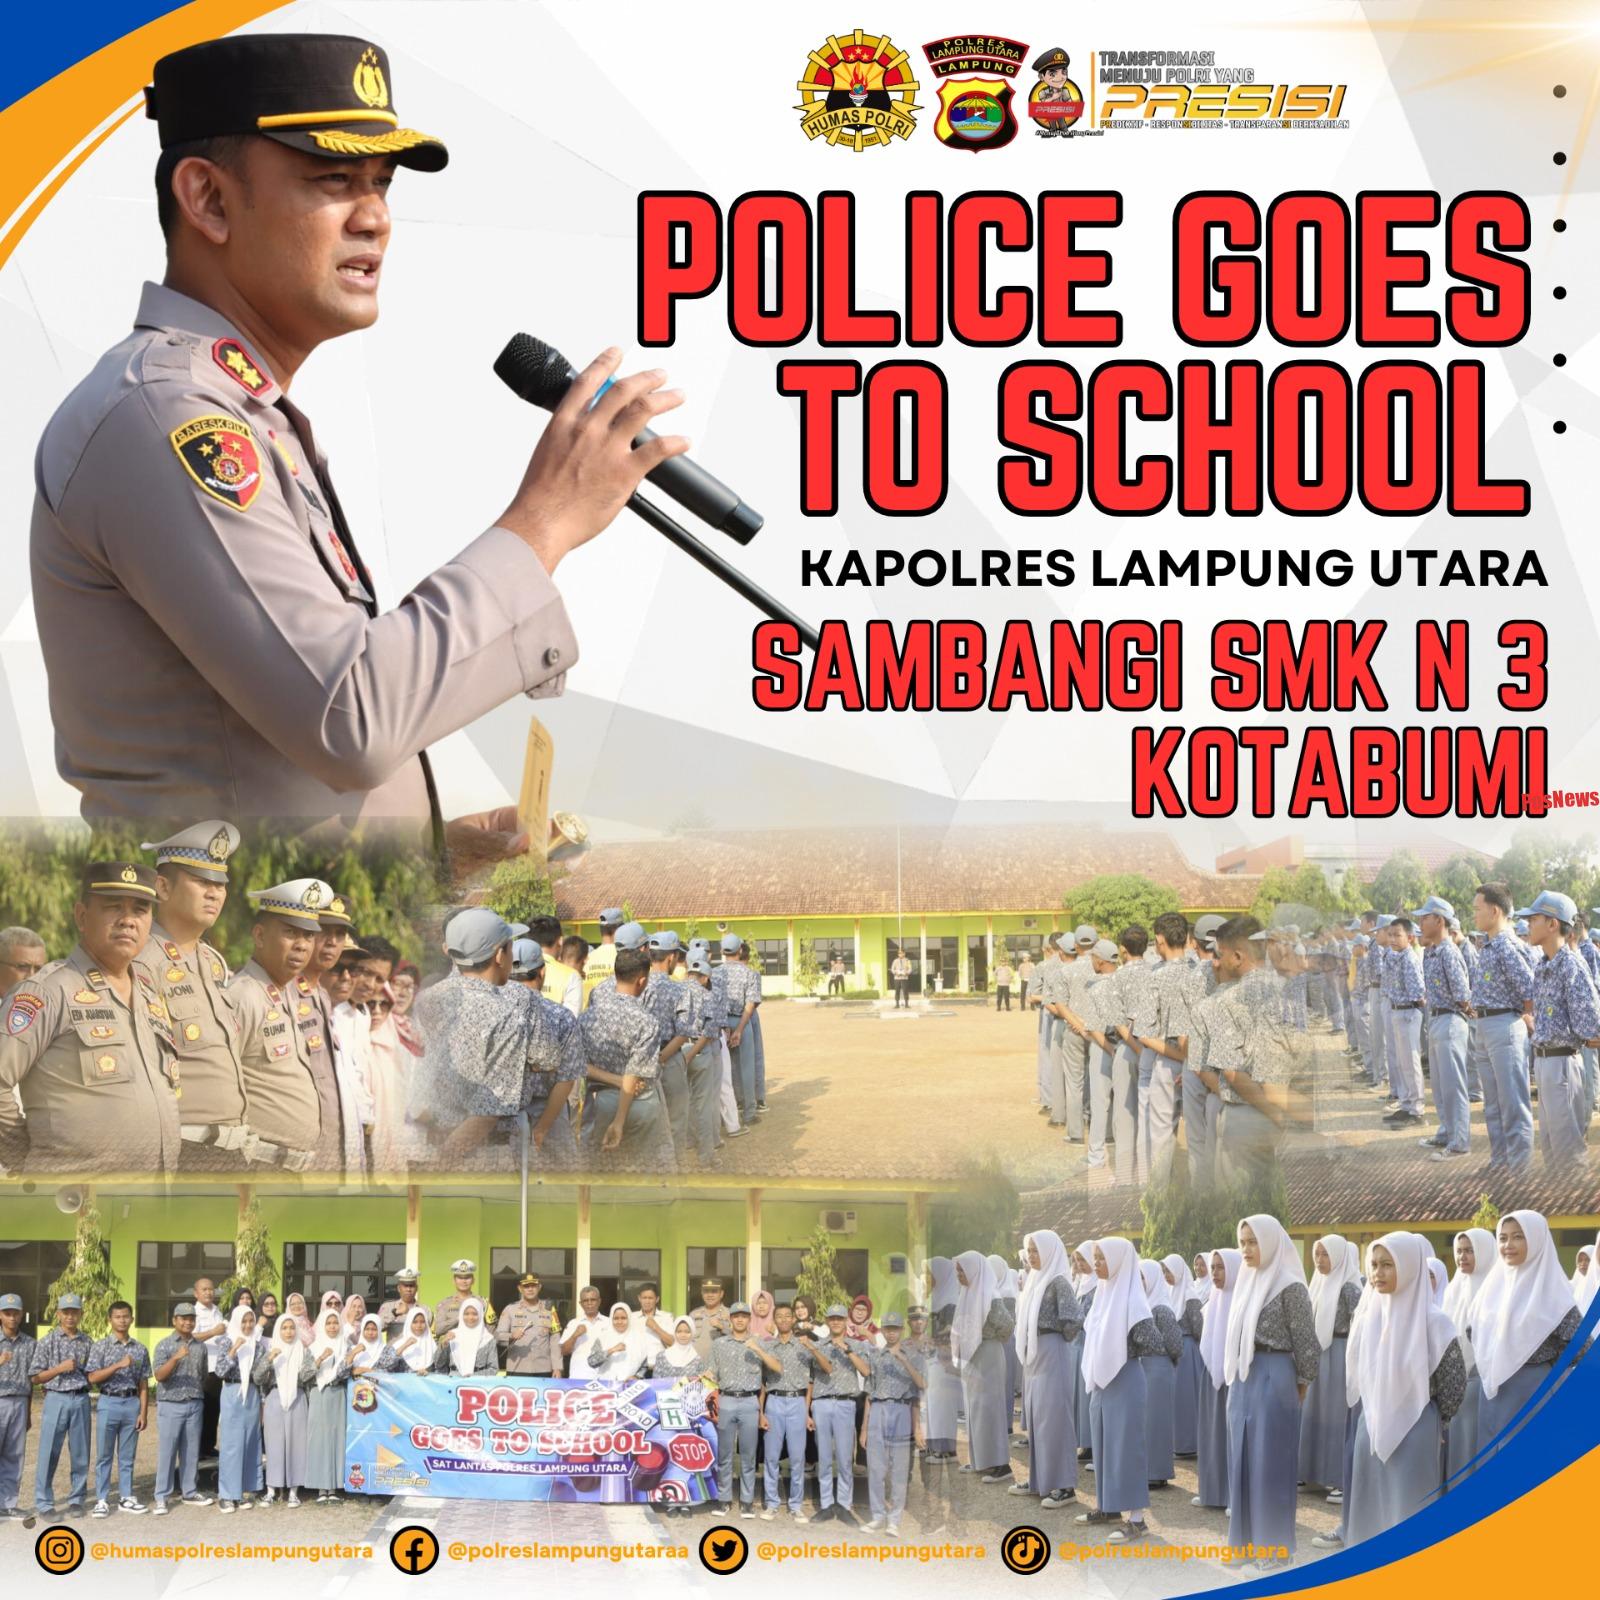 Police Goes To School, Kapolres Lampung Utara Sambangi SMK 3 Negeri Kotabumi